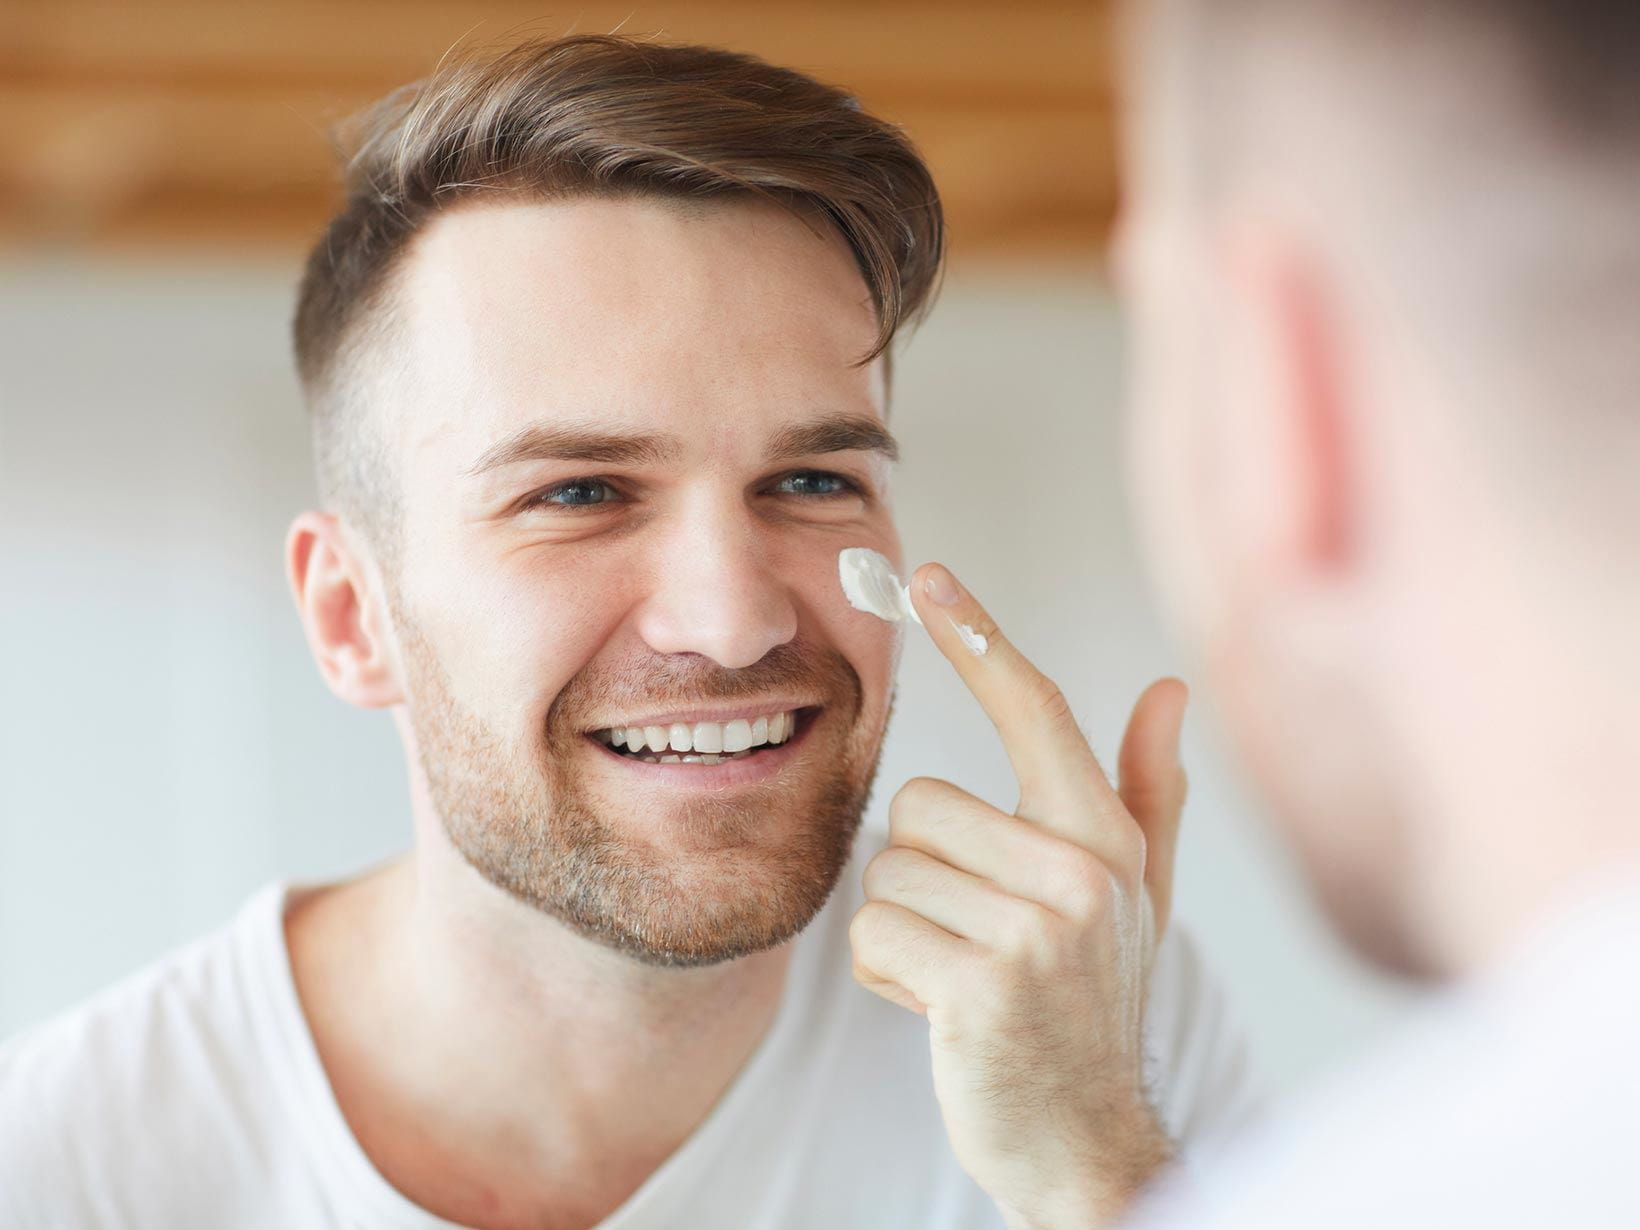 Amamelide e pelle del viso maschile: i prodotti migliori